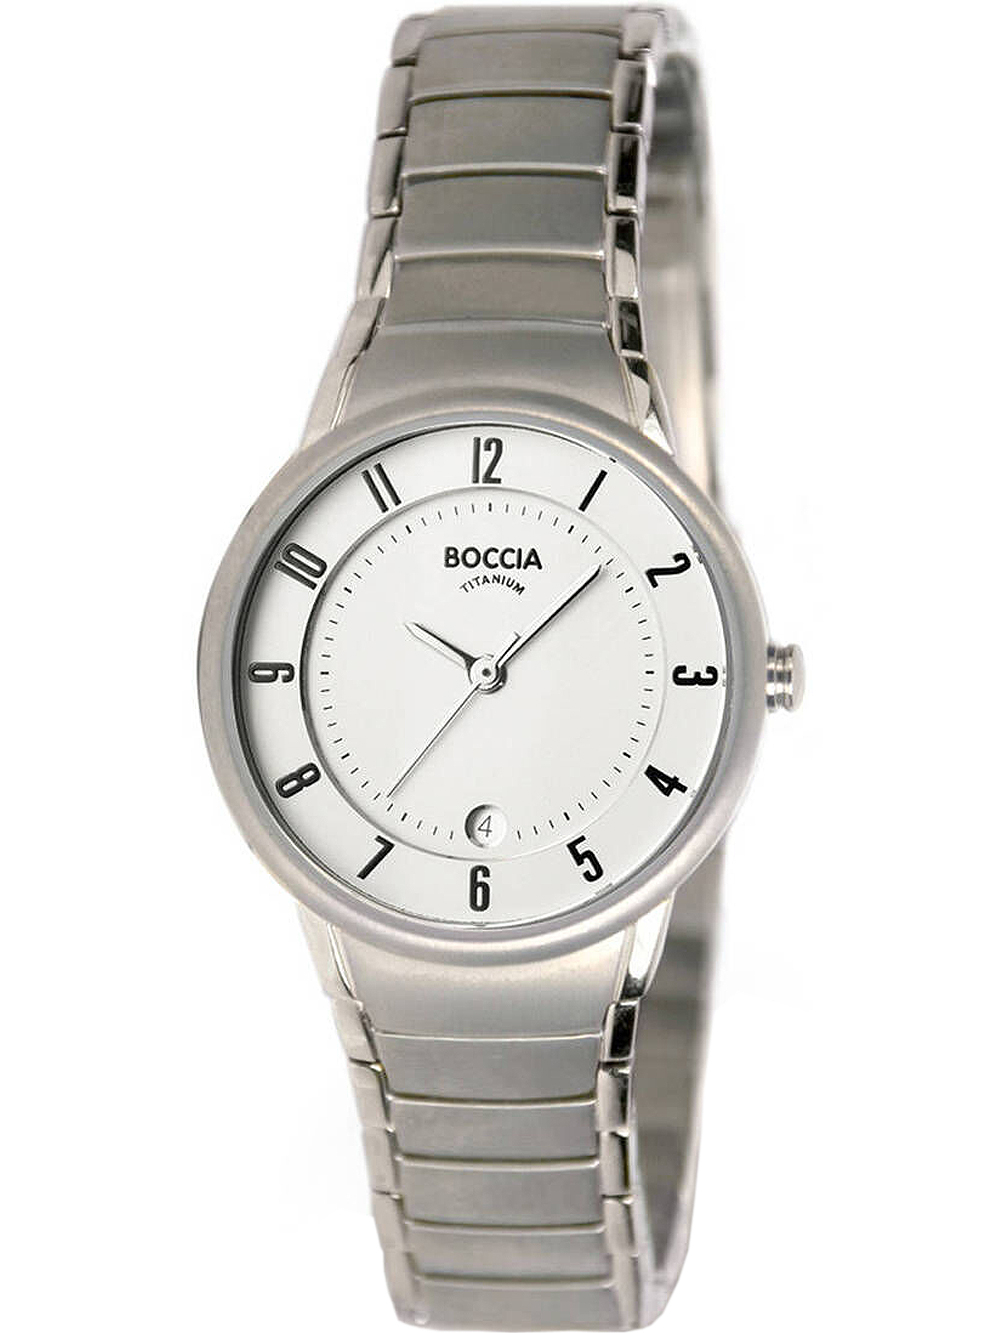 Dámské hodinky Boccia 3158-01 ladies watch titanium 29mm 5ATM